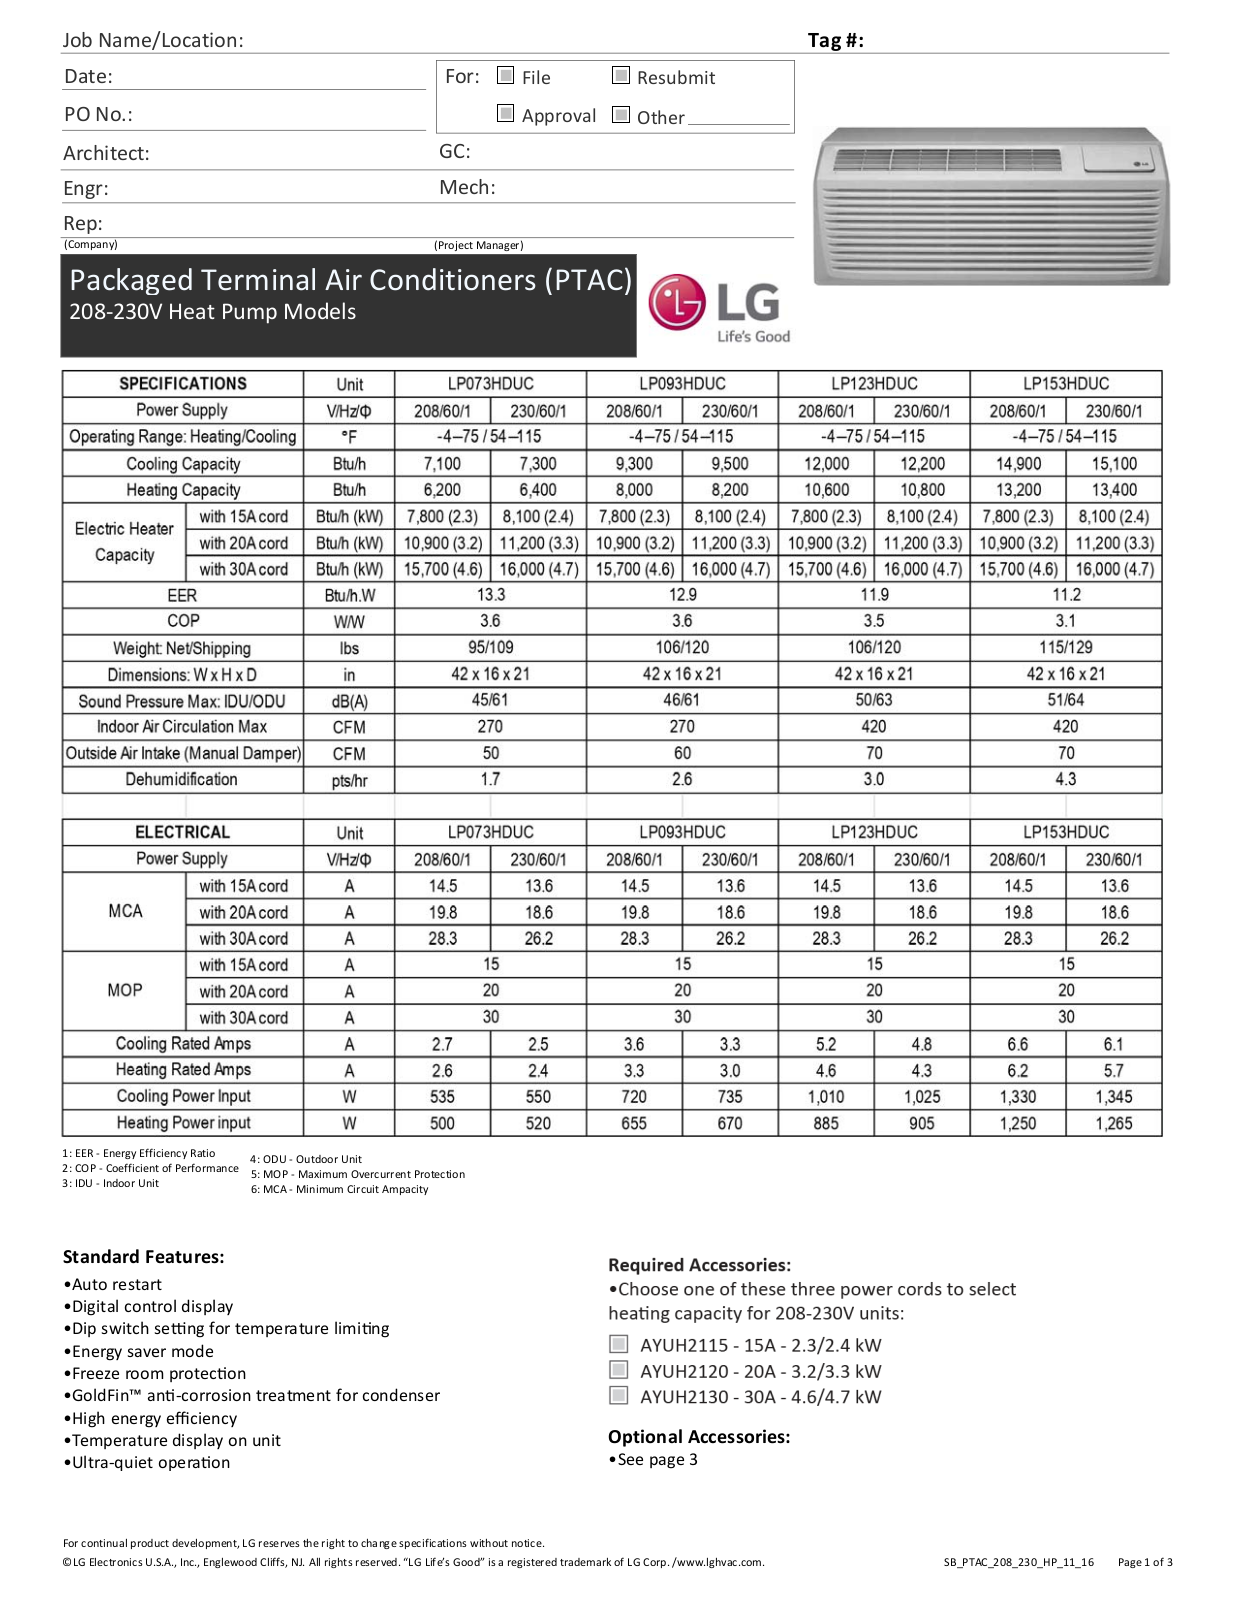 LG LP123HDUC, LP093HDUC1, LP123HDUC1, LP073HDUC Specifications